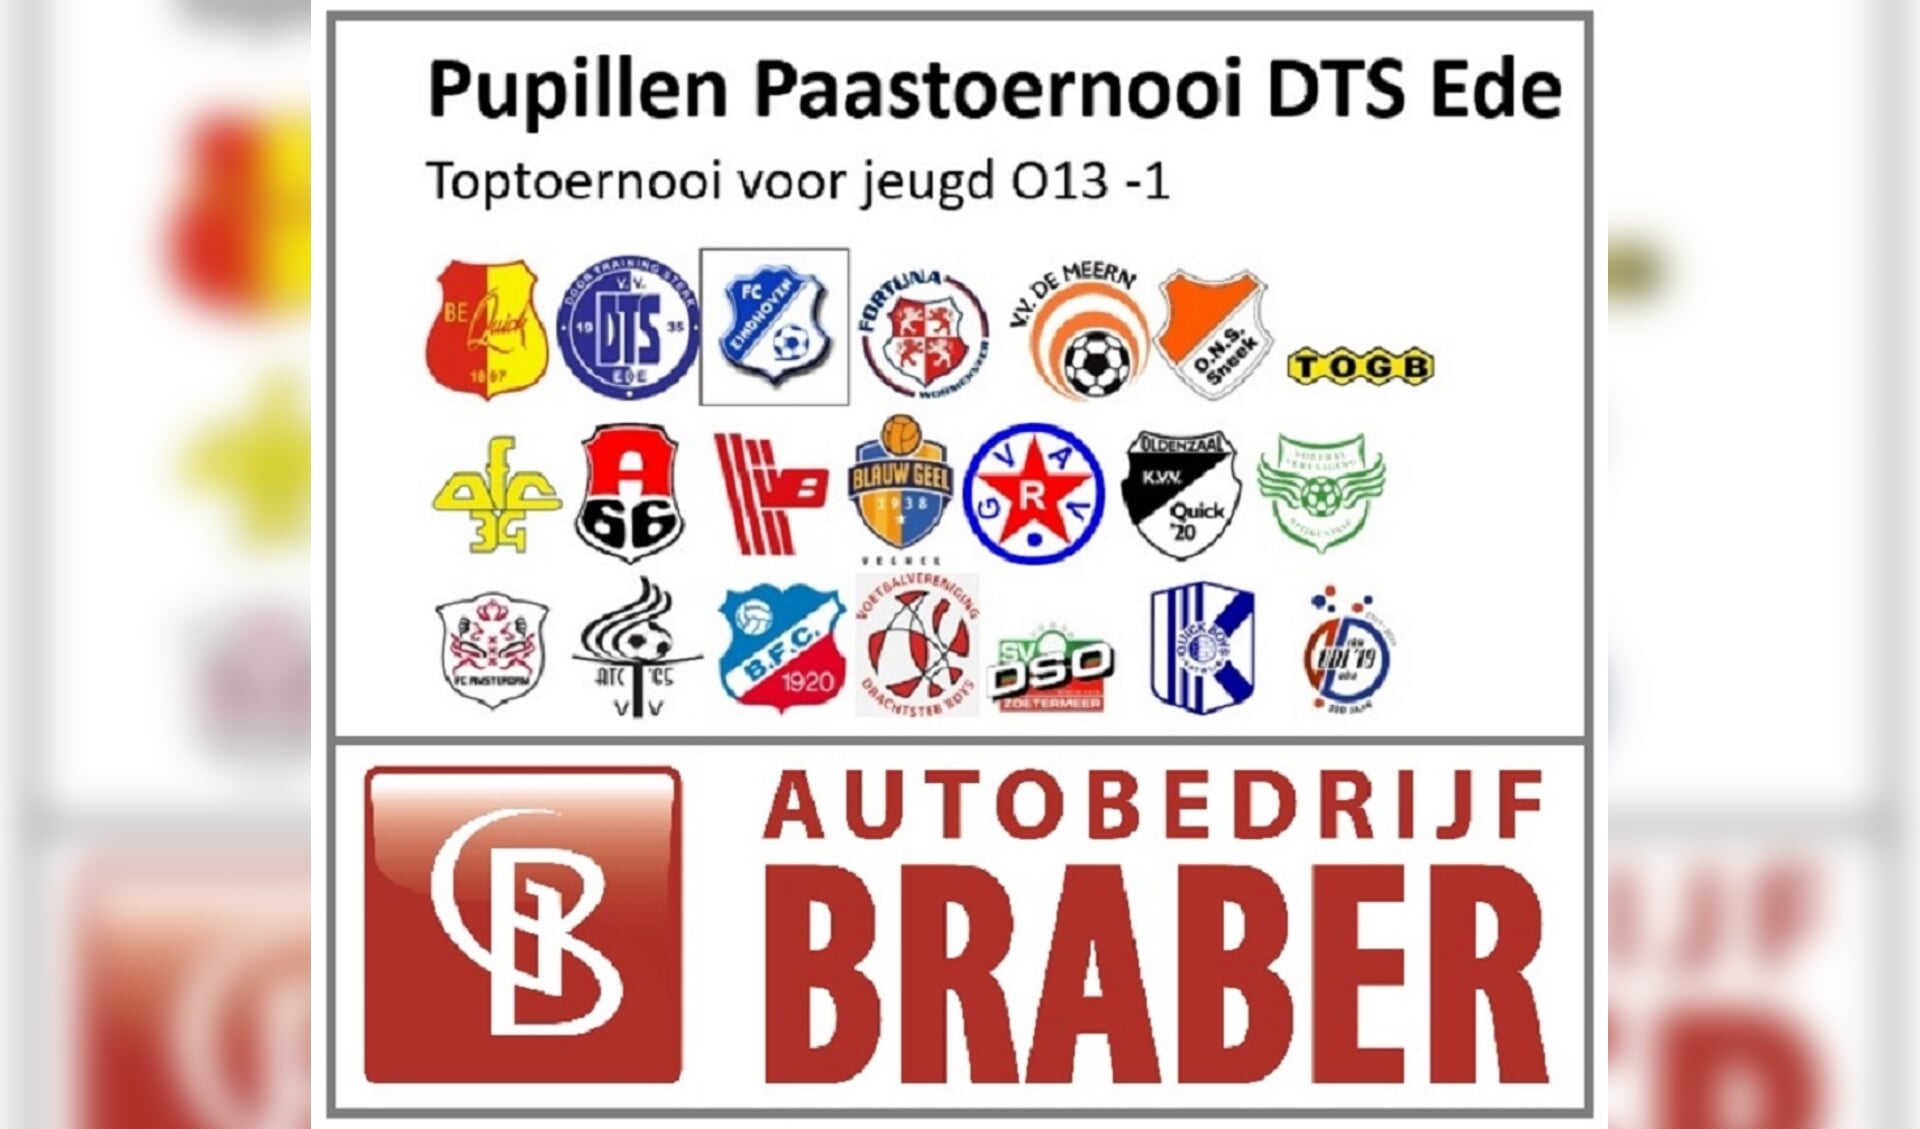 DTS Ede organiseert op 22 april 2019, tweede Paasdag, voor de 52e keer een pupillen Paastoernooi voor de O13-1 elftallen.